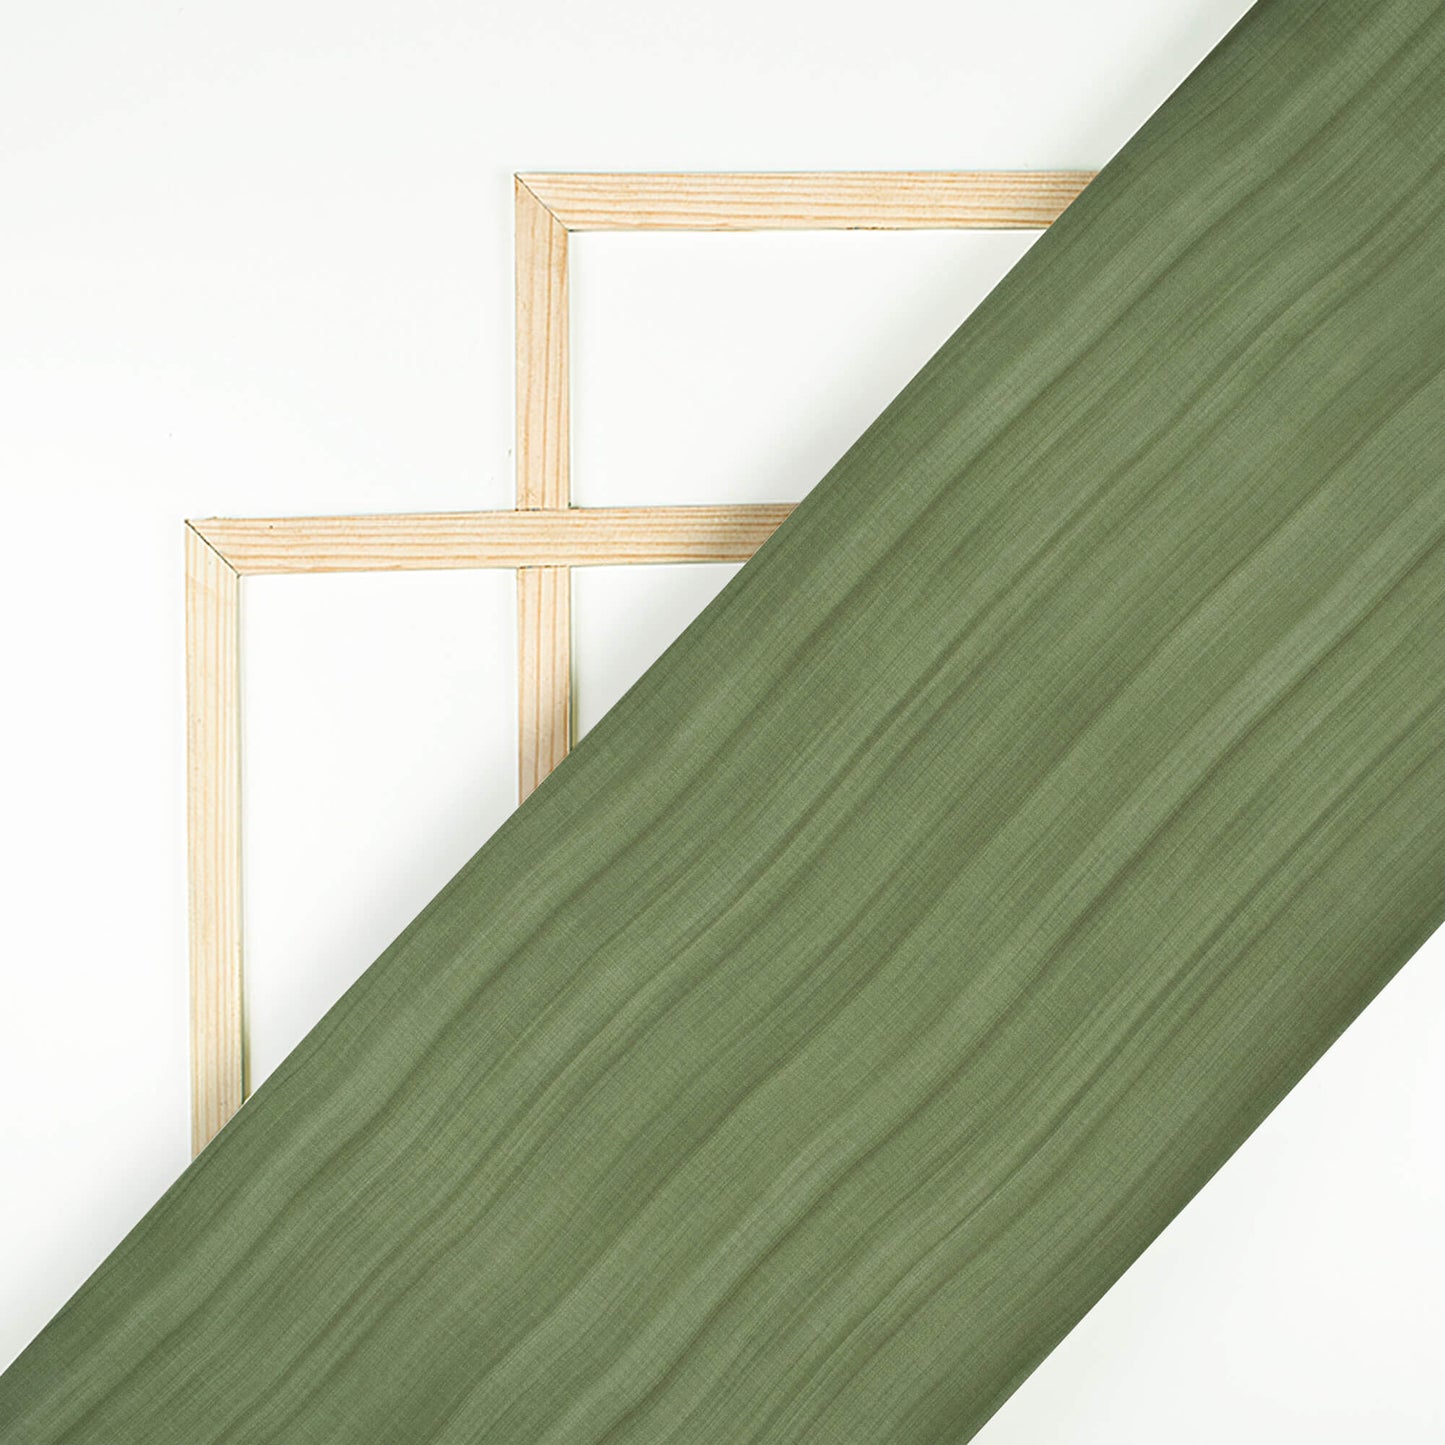 Fern Green Texture Pattern Digital Print Chiffon Satin Fabric